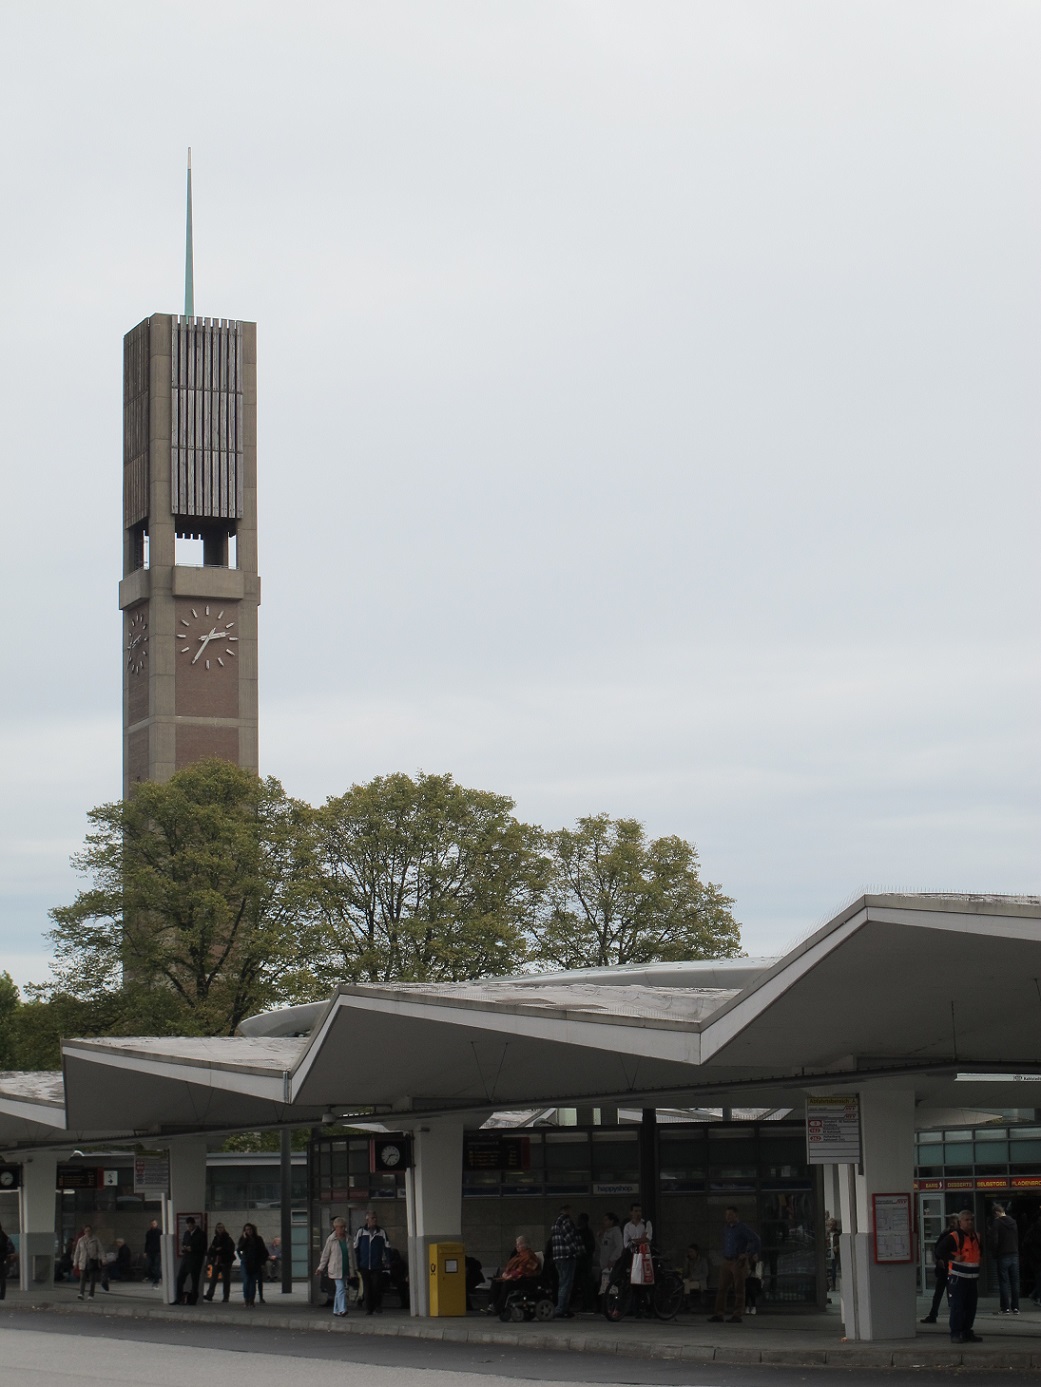 Heinz Graaf gestaltete 1960 den Bus- und U-Bahnhof "Wandsbek Markt" (Bild: K. Berkemann)